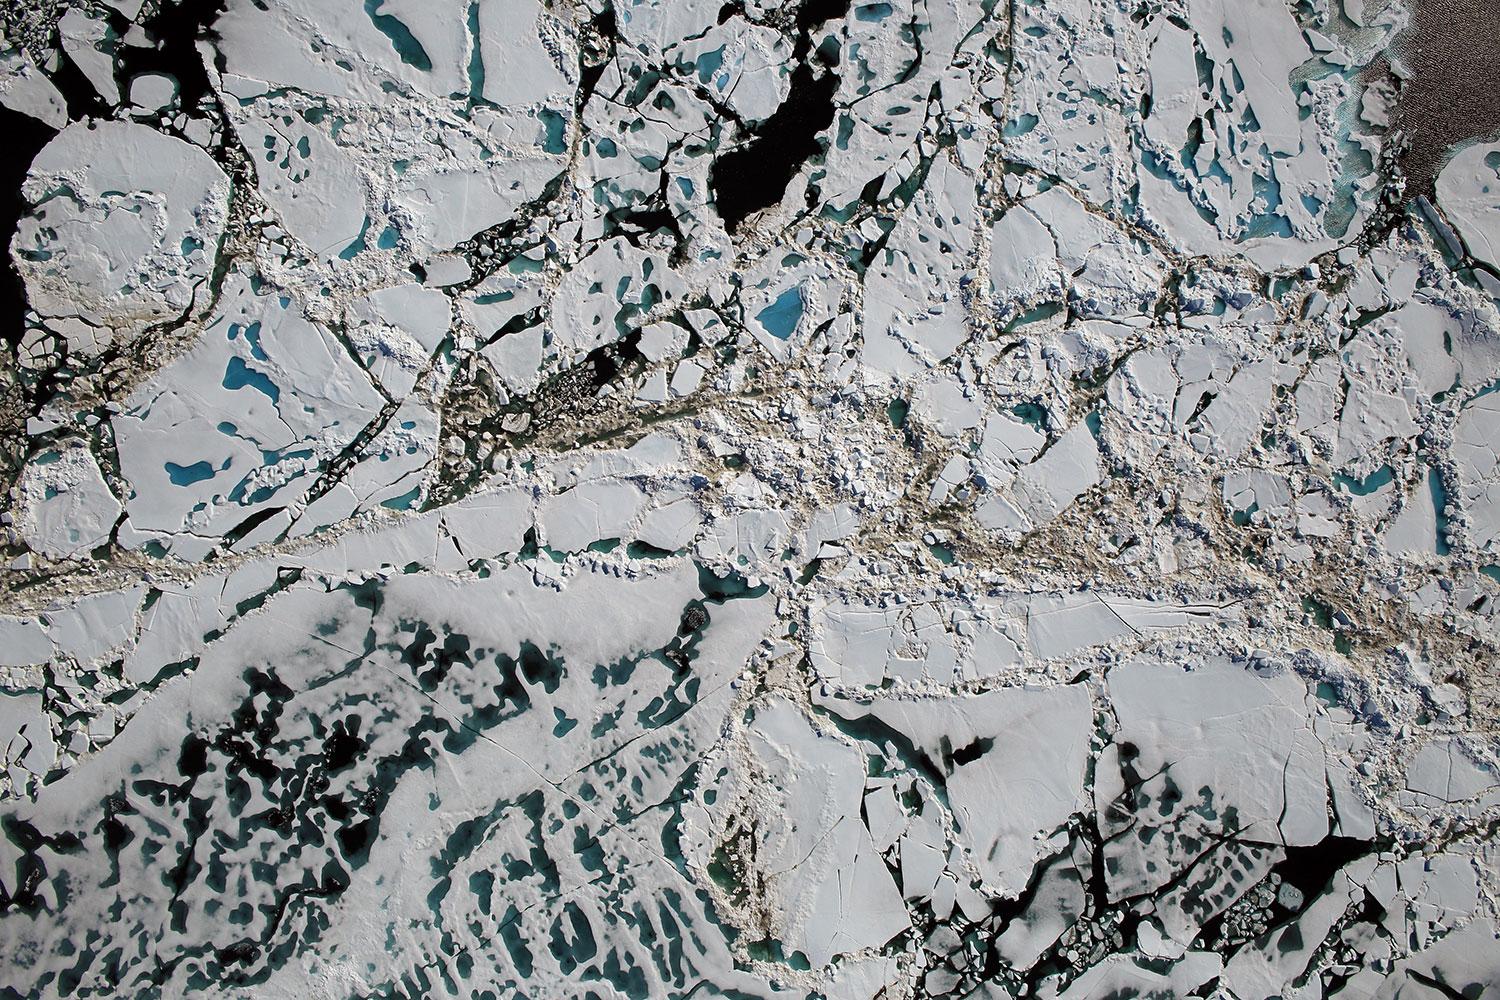 Flygbild från Tjkterhavet i Arktis visar havsis, dammar med smältvatten och öppet hav.